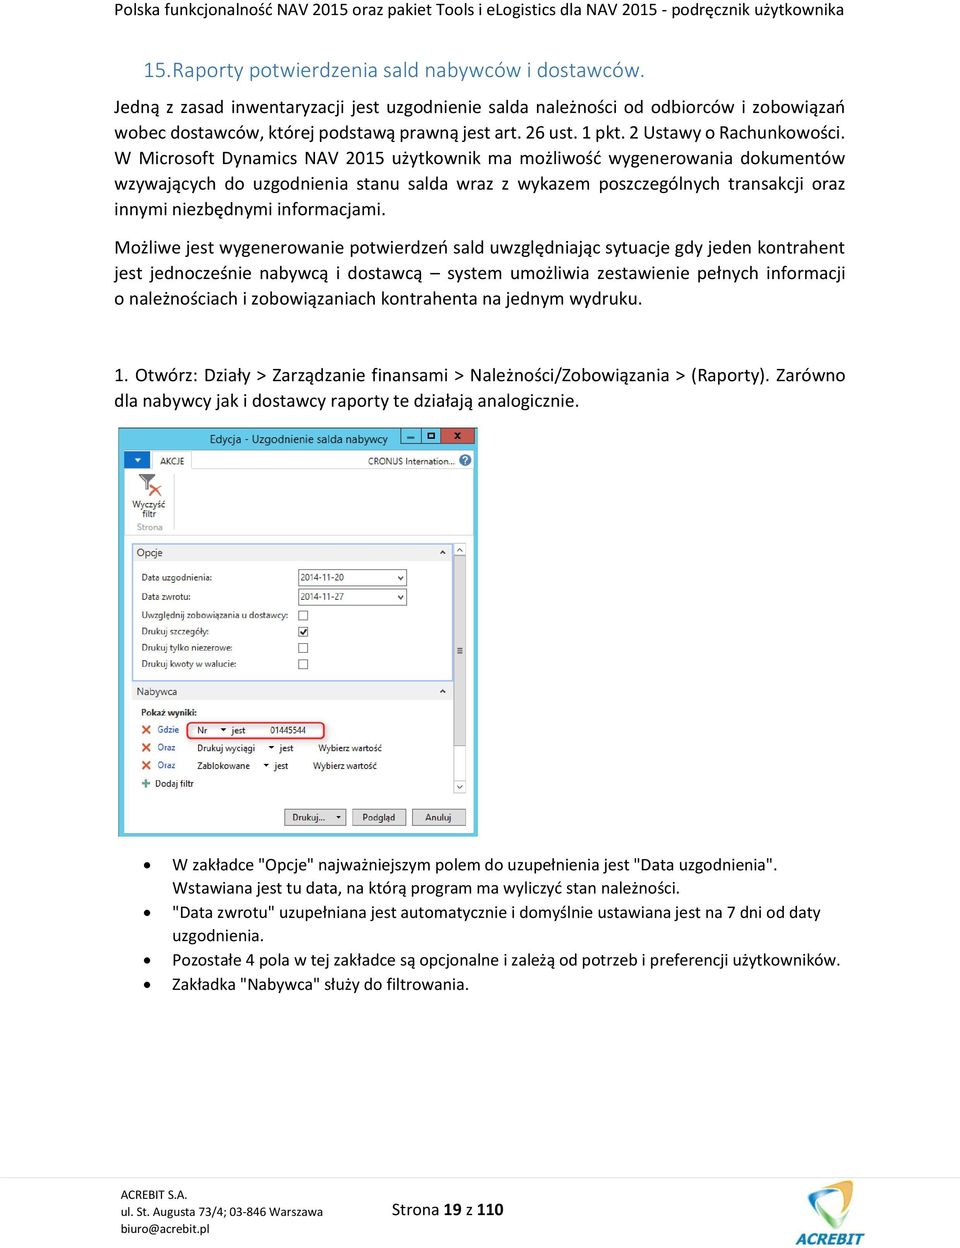 W Microsoft Dynamics NAV 2015 użytkownik ma możliwość wygenerowania dokumentów wzywających do uzgodnienia stanu salda wraz z wykazem poszczególnych transakcji oraz innymi niezbędnymi informacjami.